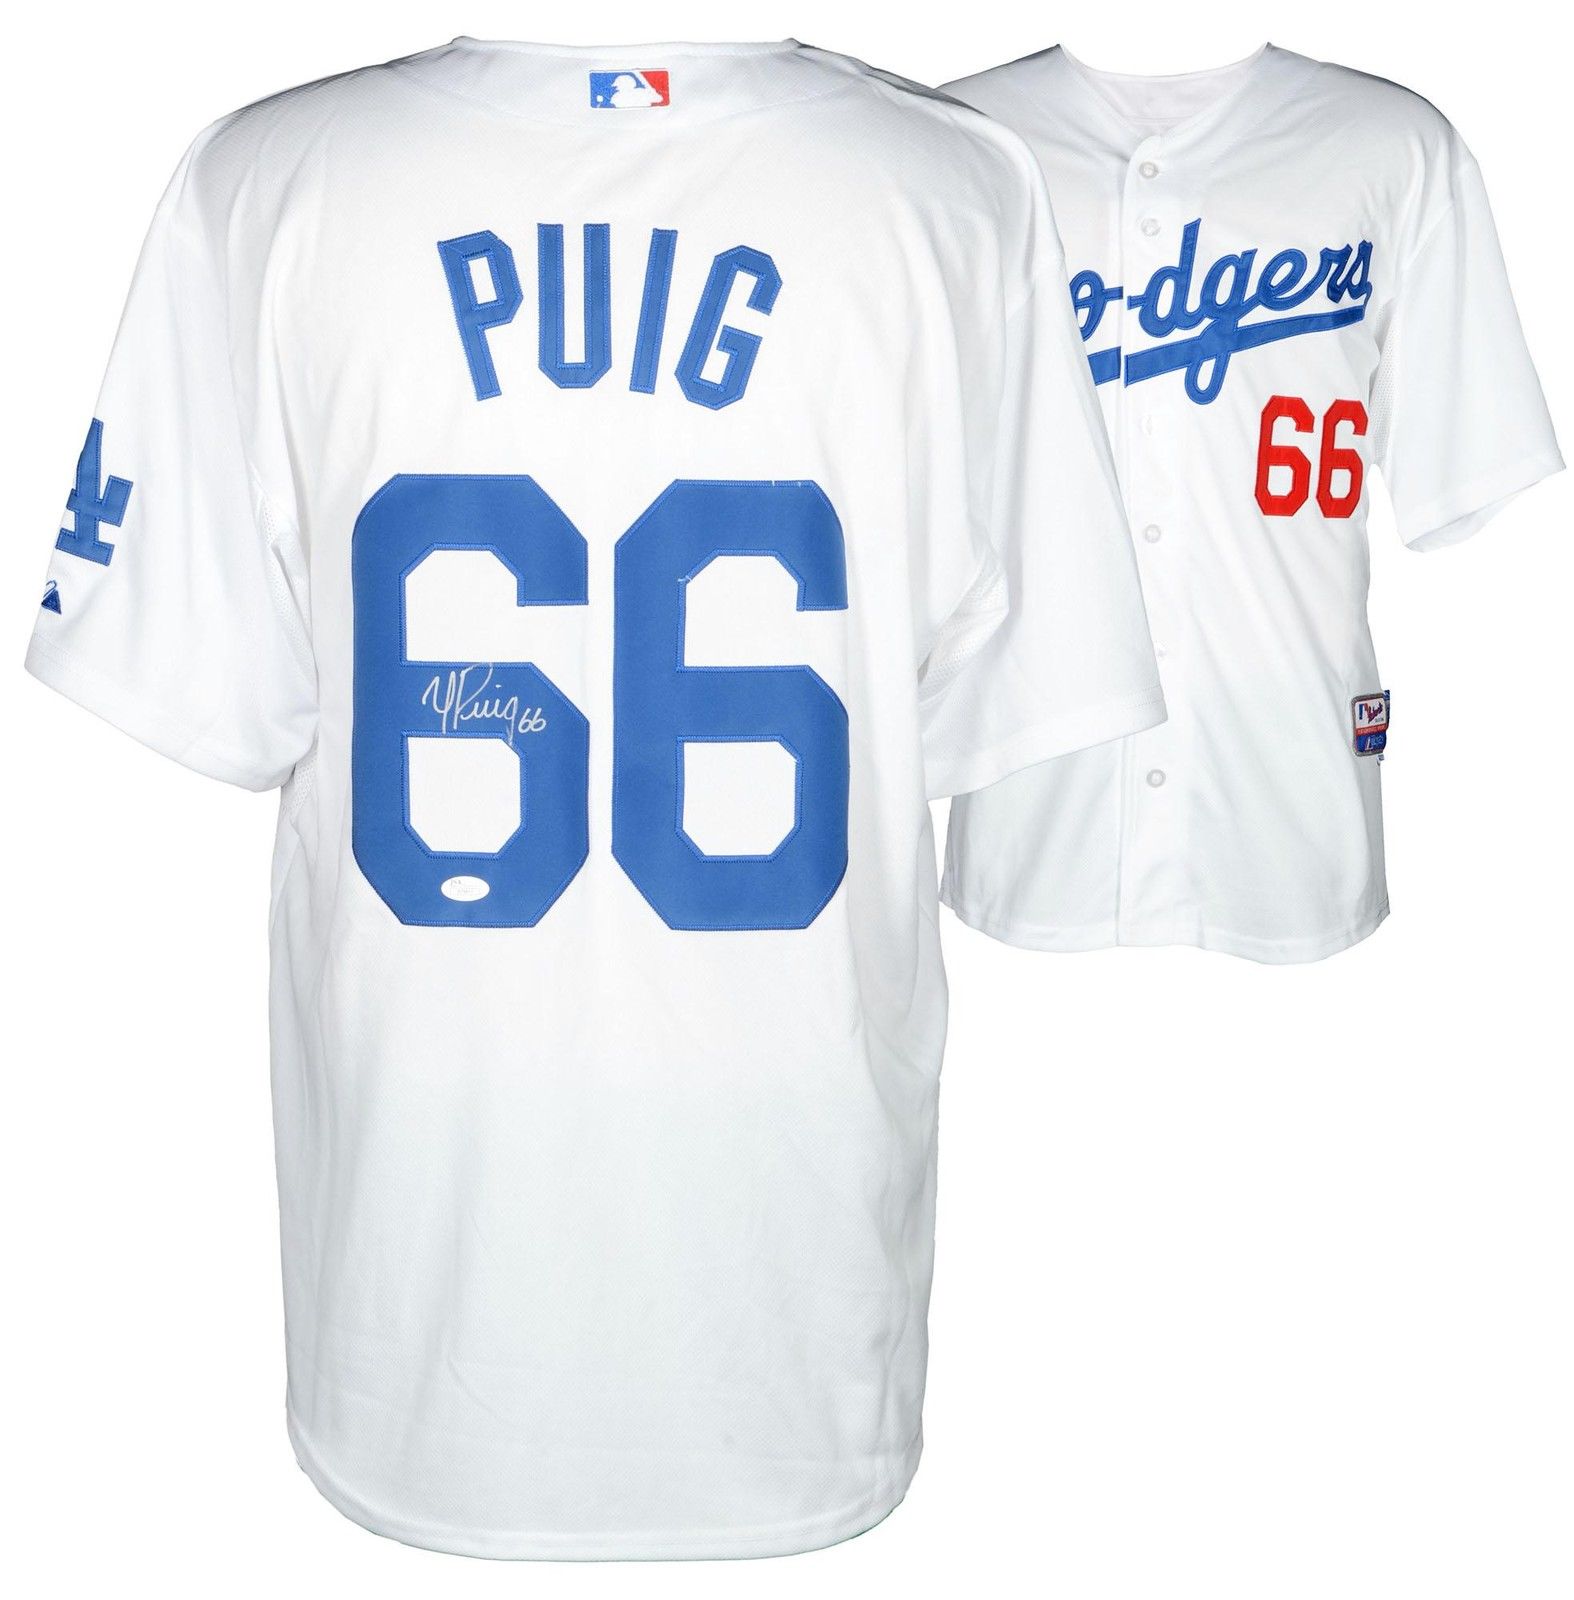 LA Dodgers Puig Shirt